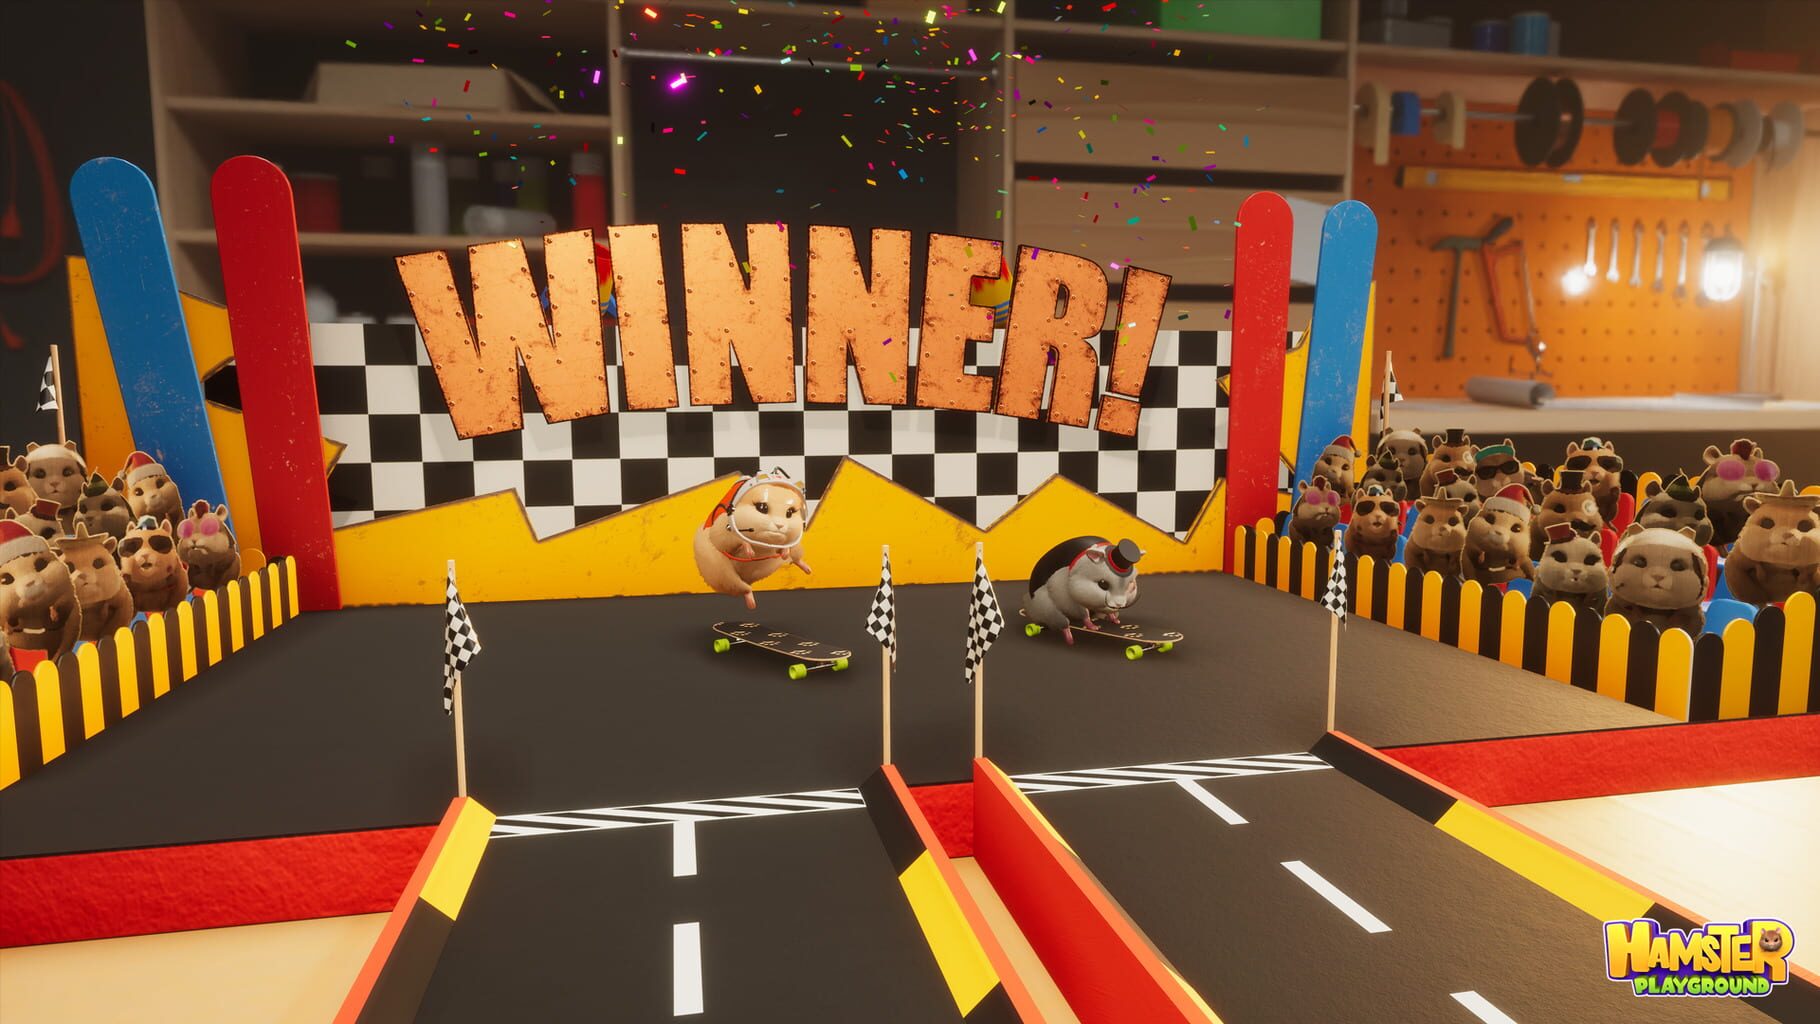 Hamster Playground screenshot